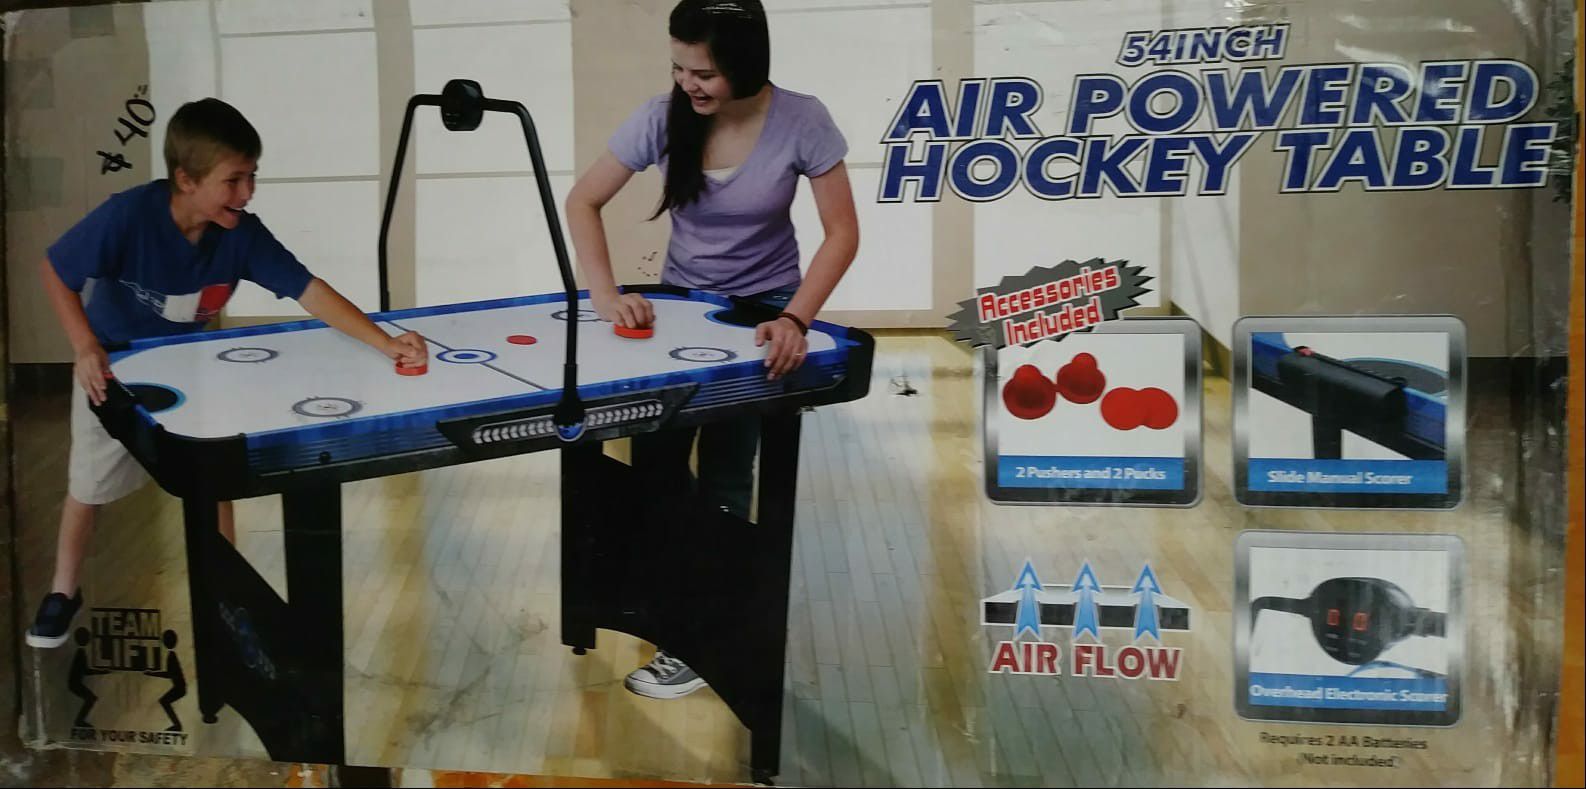 54" air powered hockey table